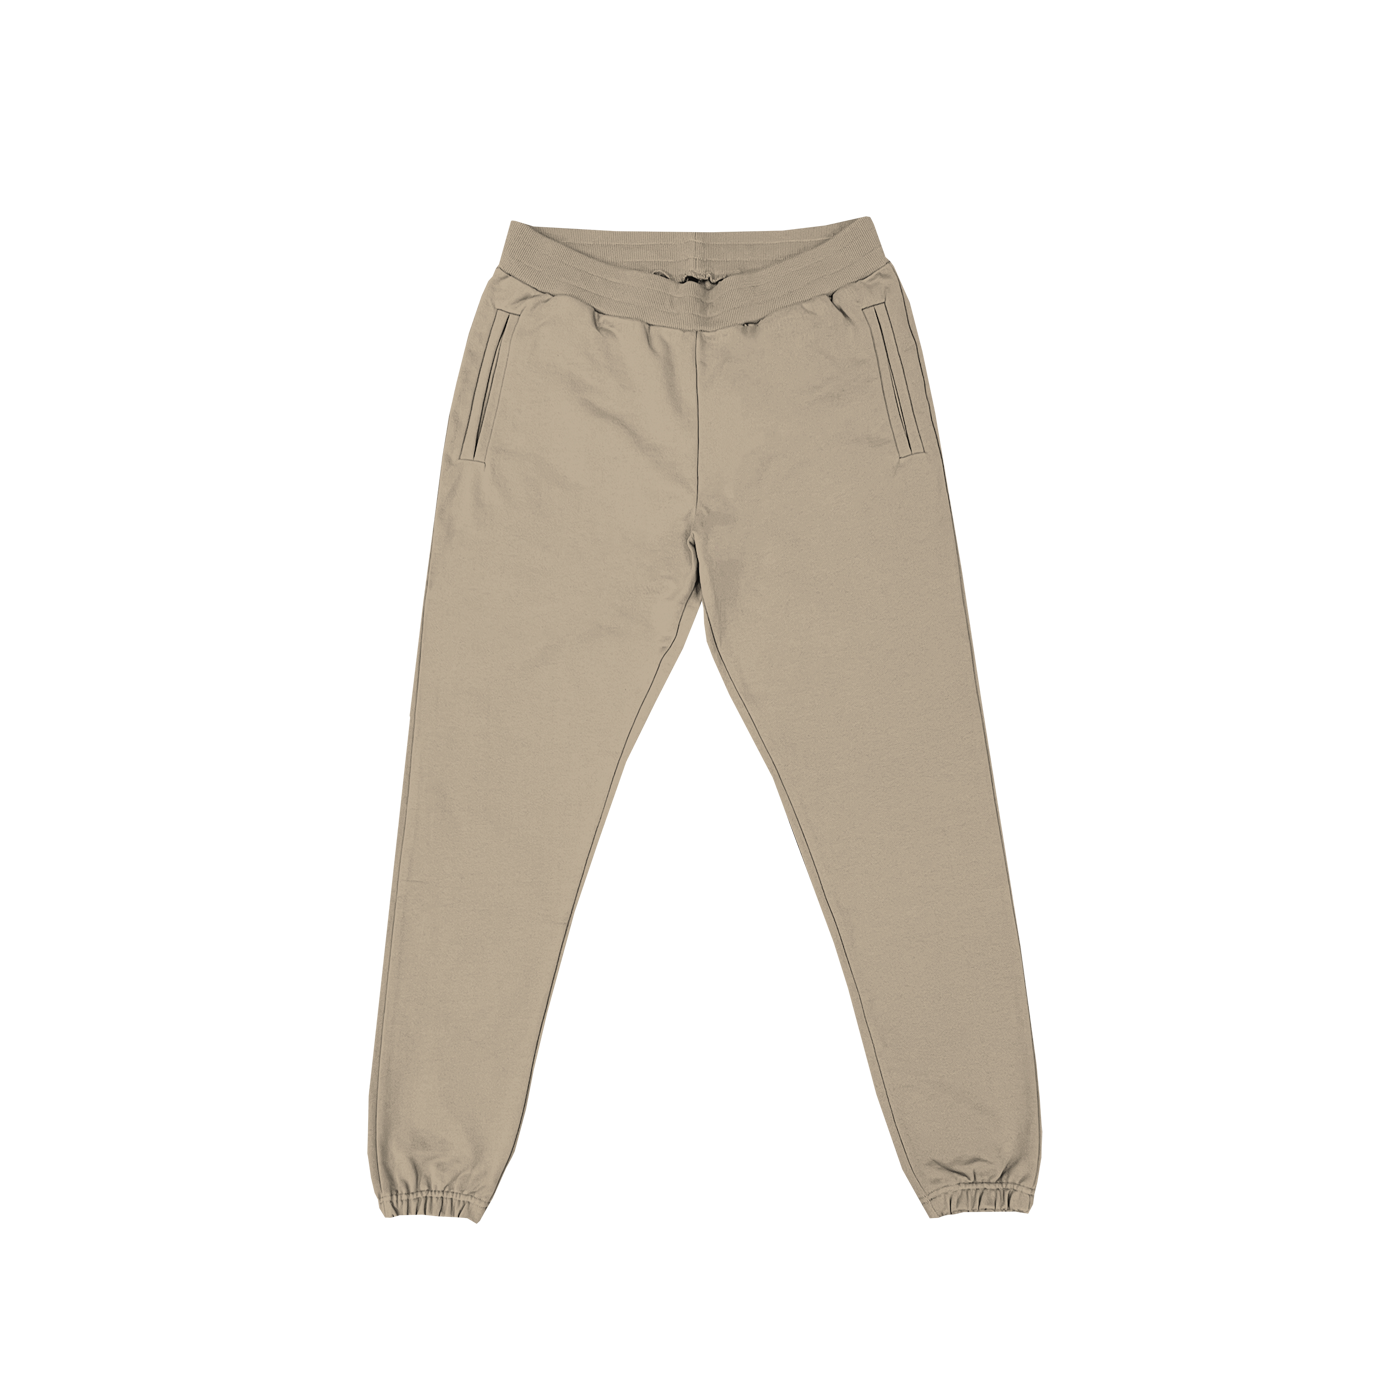 "Pantalon de survêtement couleur sable avec poches latérales pour un look décontracté, disponible sur prynt.shop."